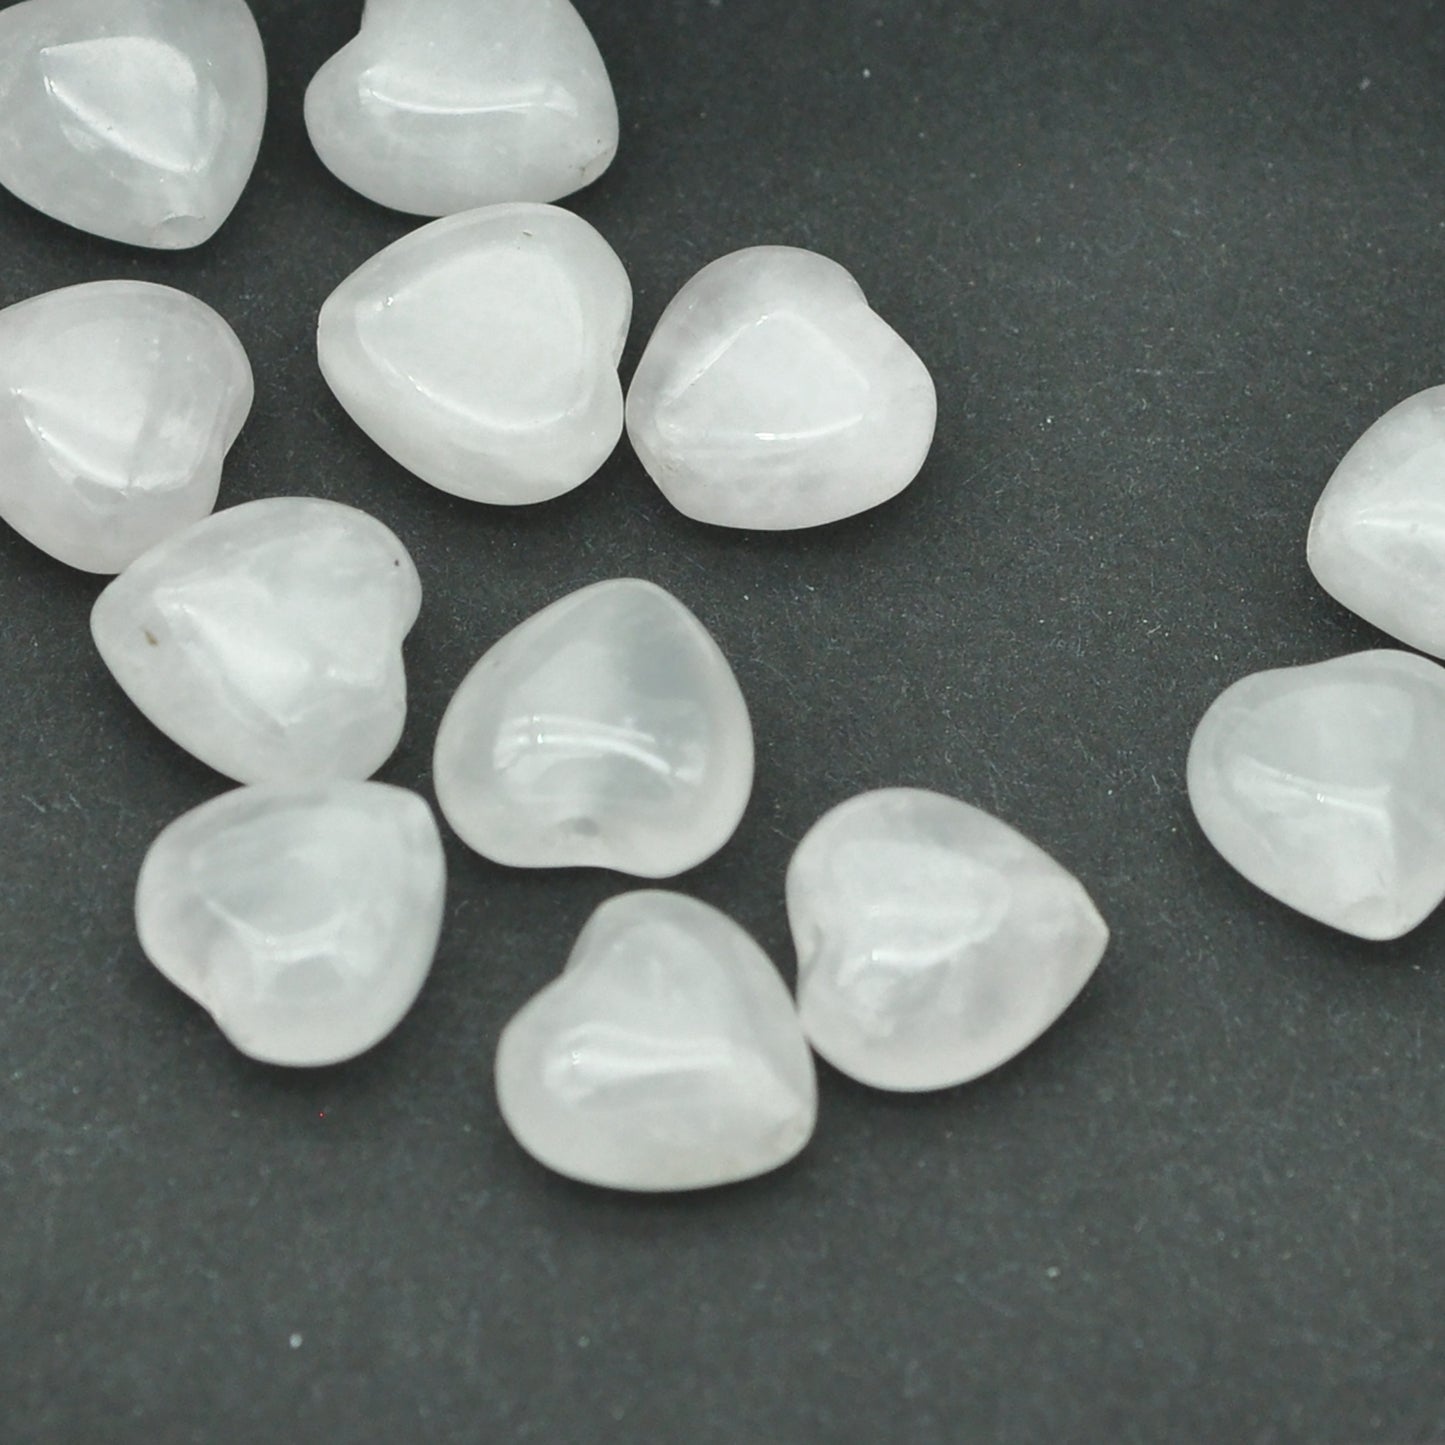 Heart of rose quartz / precious stone / 8 mm